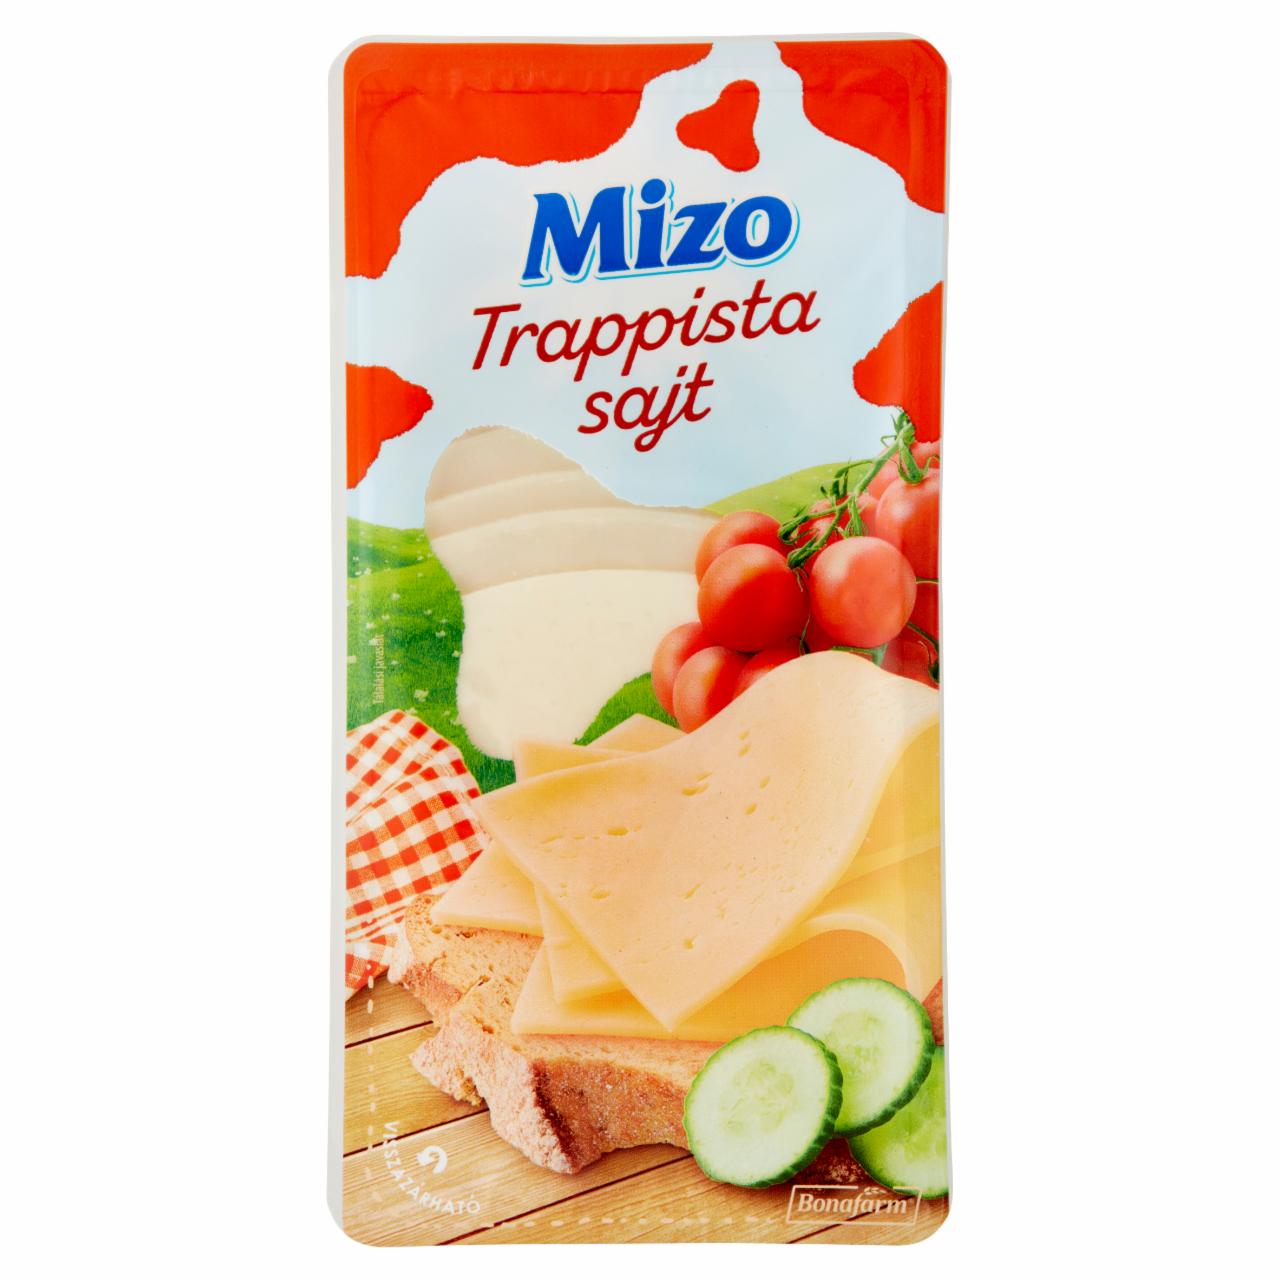 Képek - Szeletelt trappista sajt Mizo